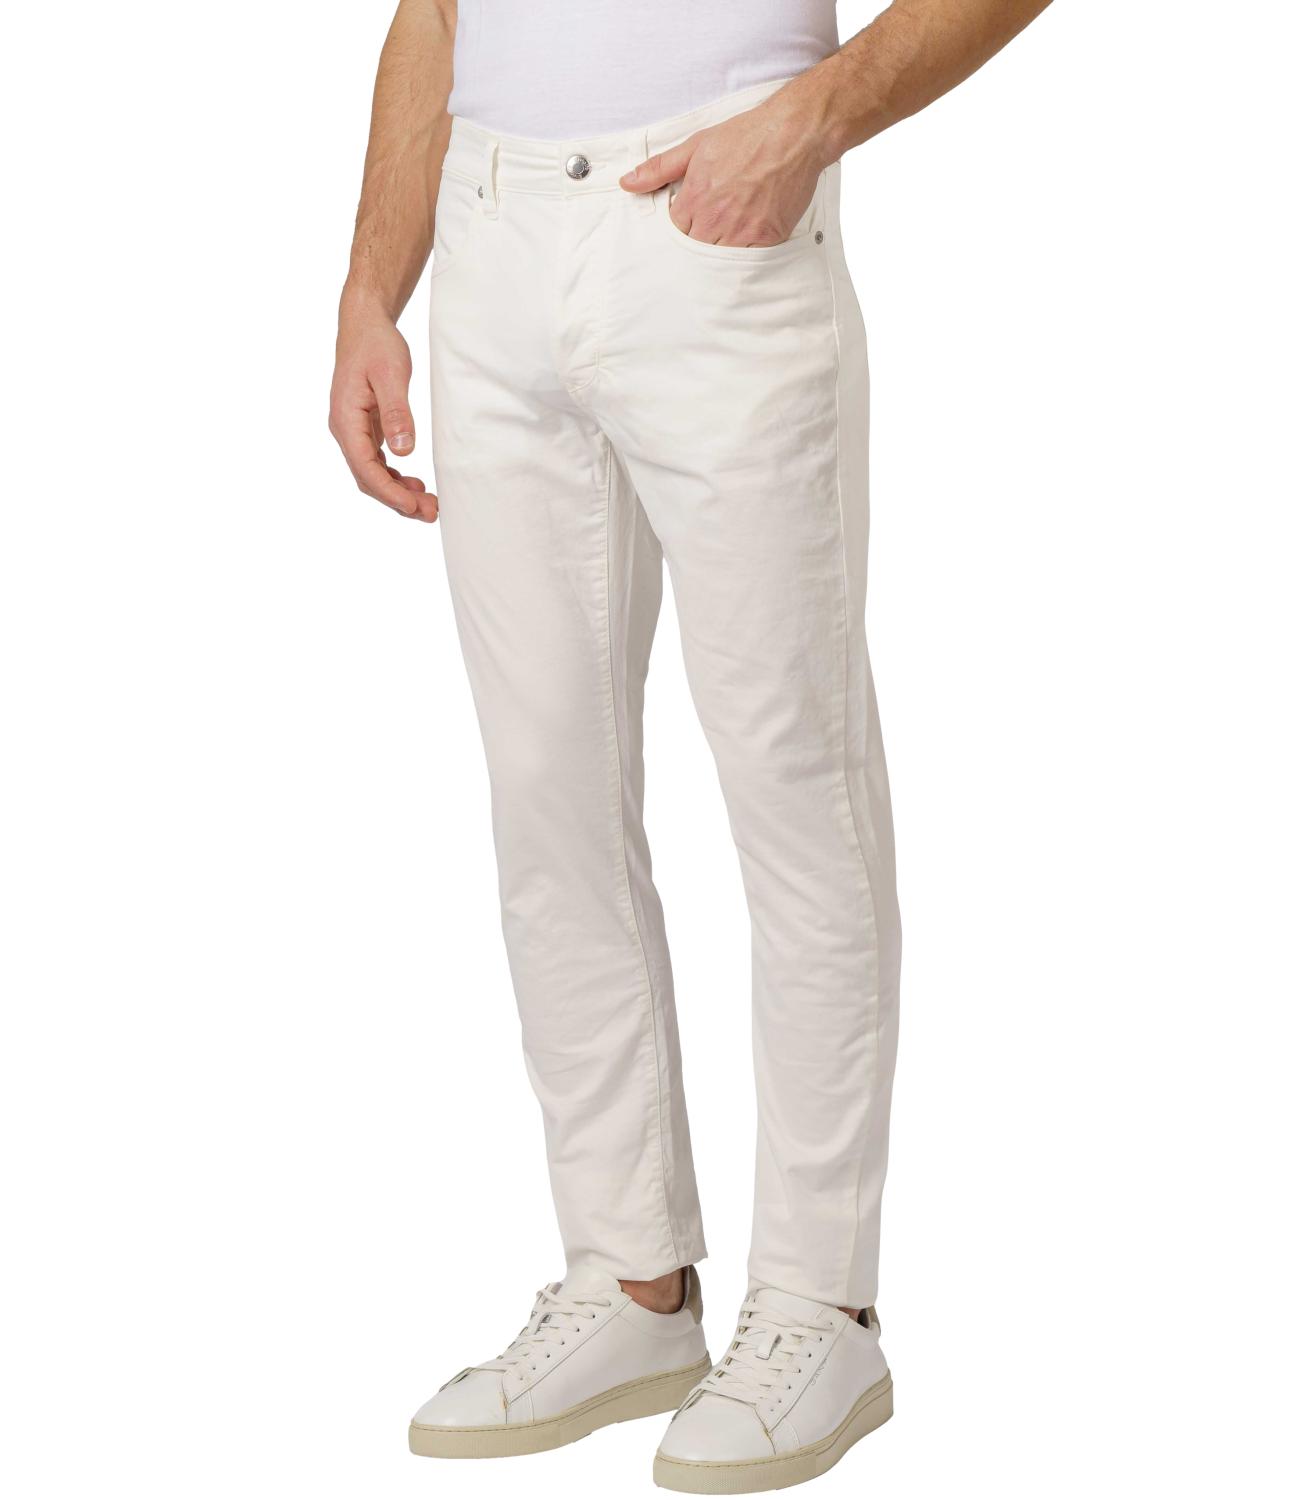 Siviglia jeans bianco uomo